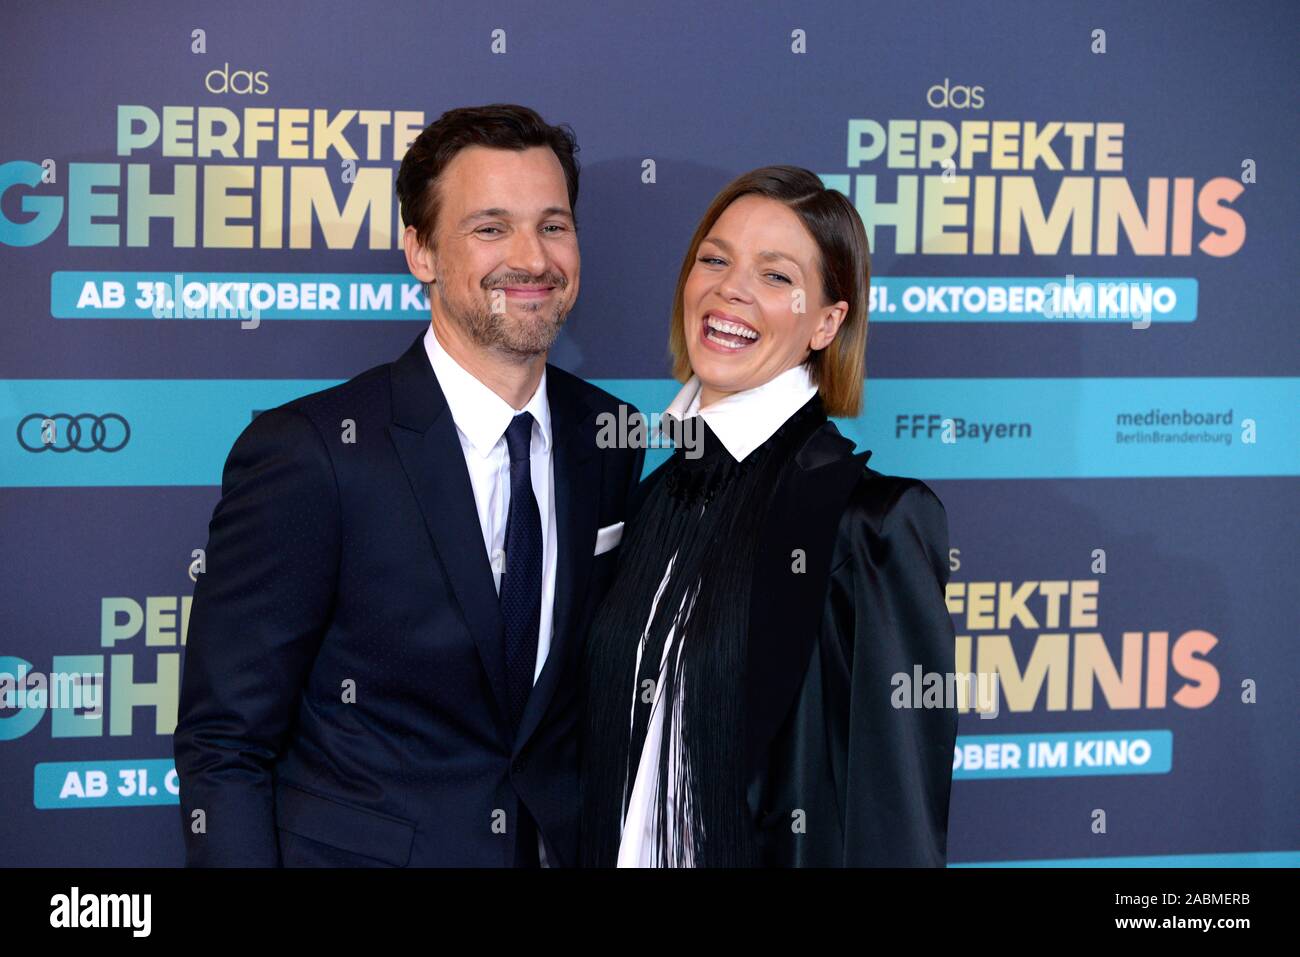 Les acteurs Florian David Fitz et Jessica Schwarz à la première du film 'Das perfekte Geheimnis" au Mathäser Kino à Munich. [Traduction automatique] Banque D'Images